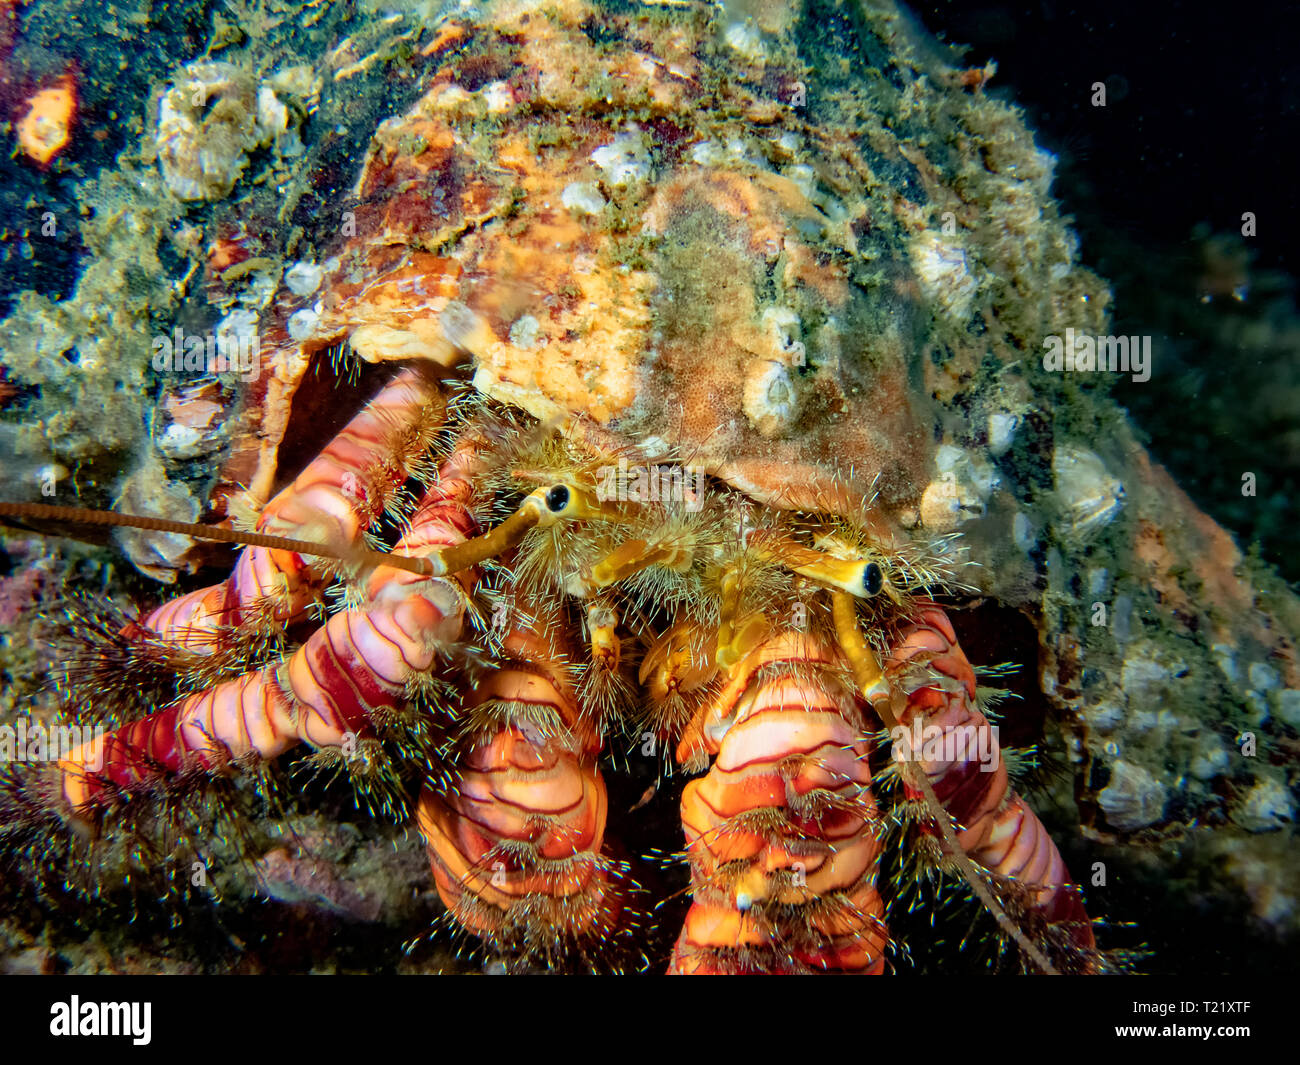 Elegant Hermit Crab (Aniculus elegans) Stock Photo